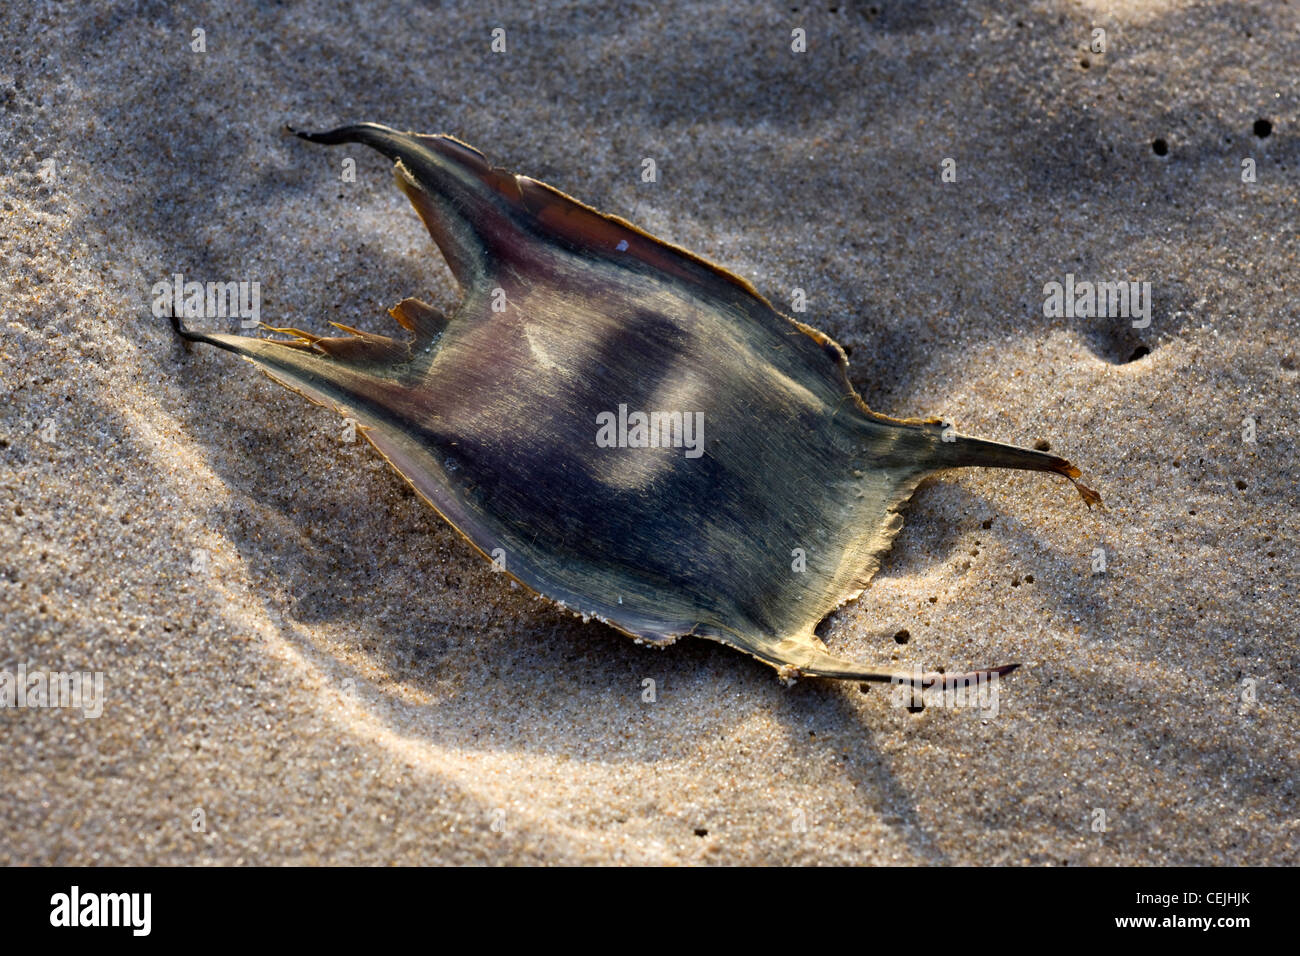 Caso di uovo / mermaid la borsa di un Thornback ray / Thornback skate (Raja clavata) sulla spiaggia, Belgio Foto Stock